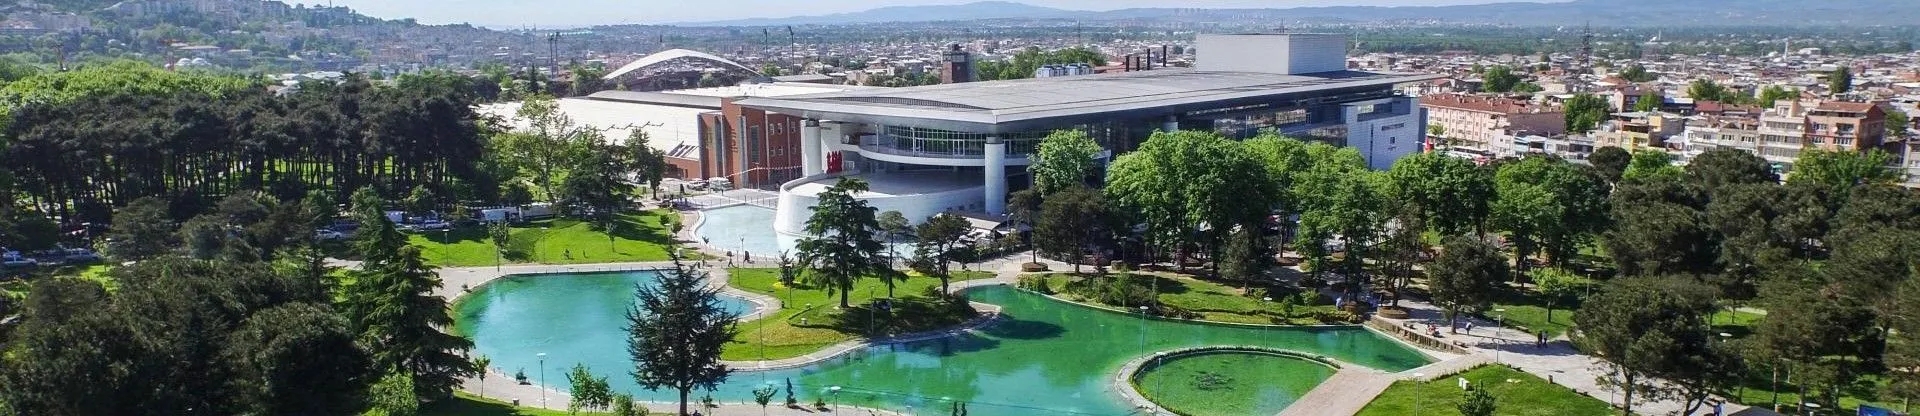 Fuar Alanı - Merinos Atatürk Kongre Kültür Merkezi - cover